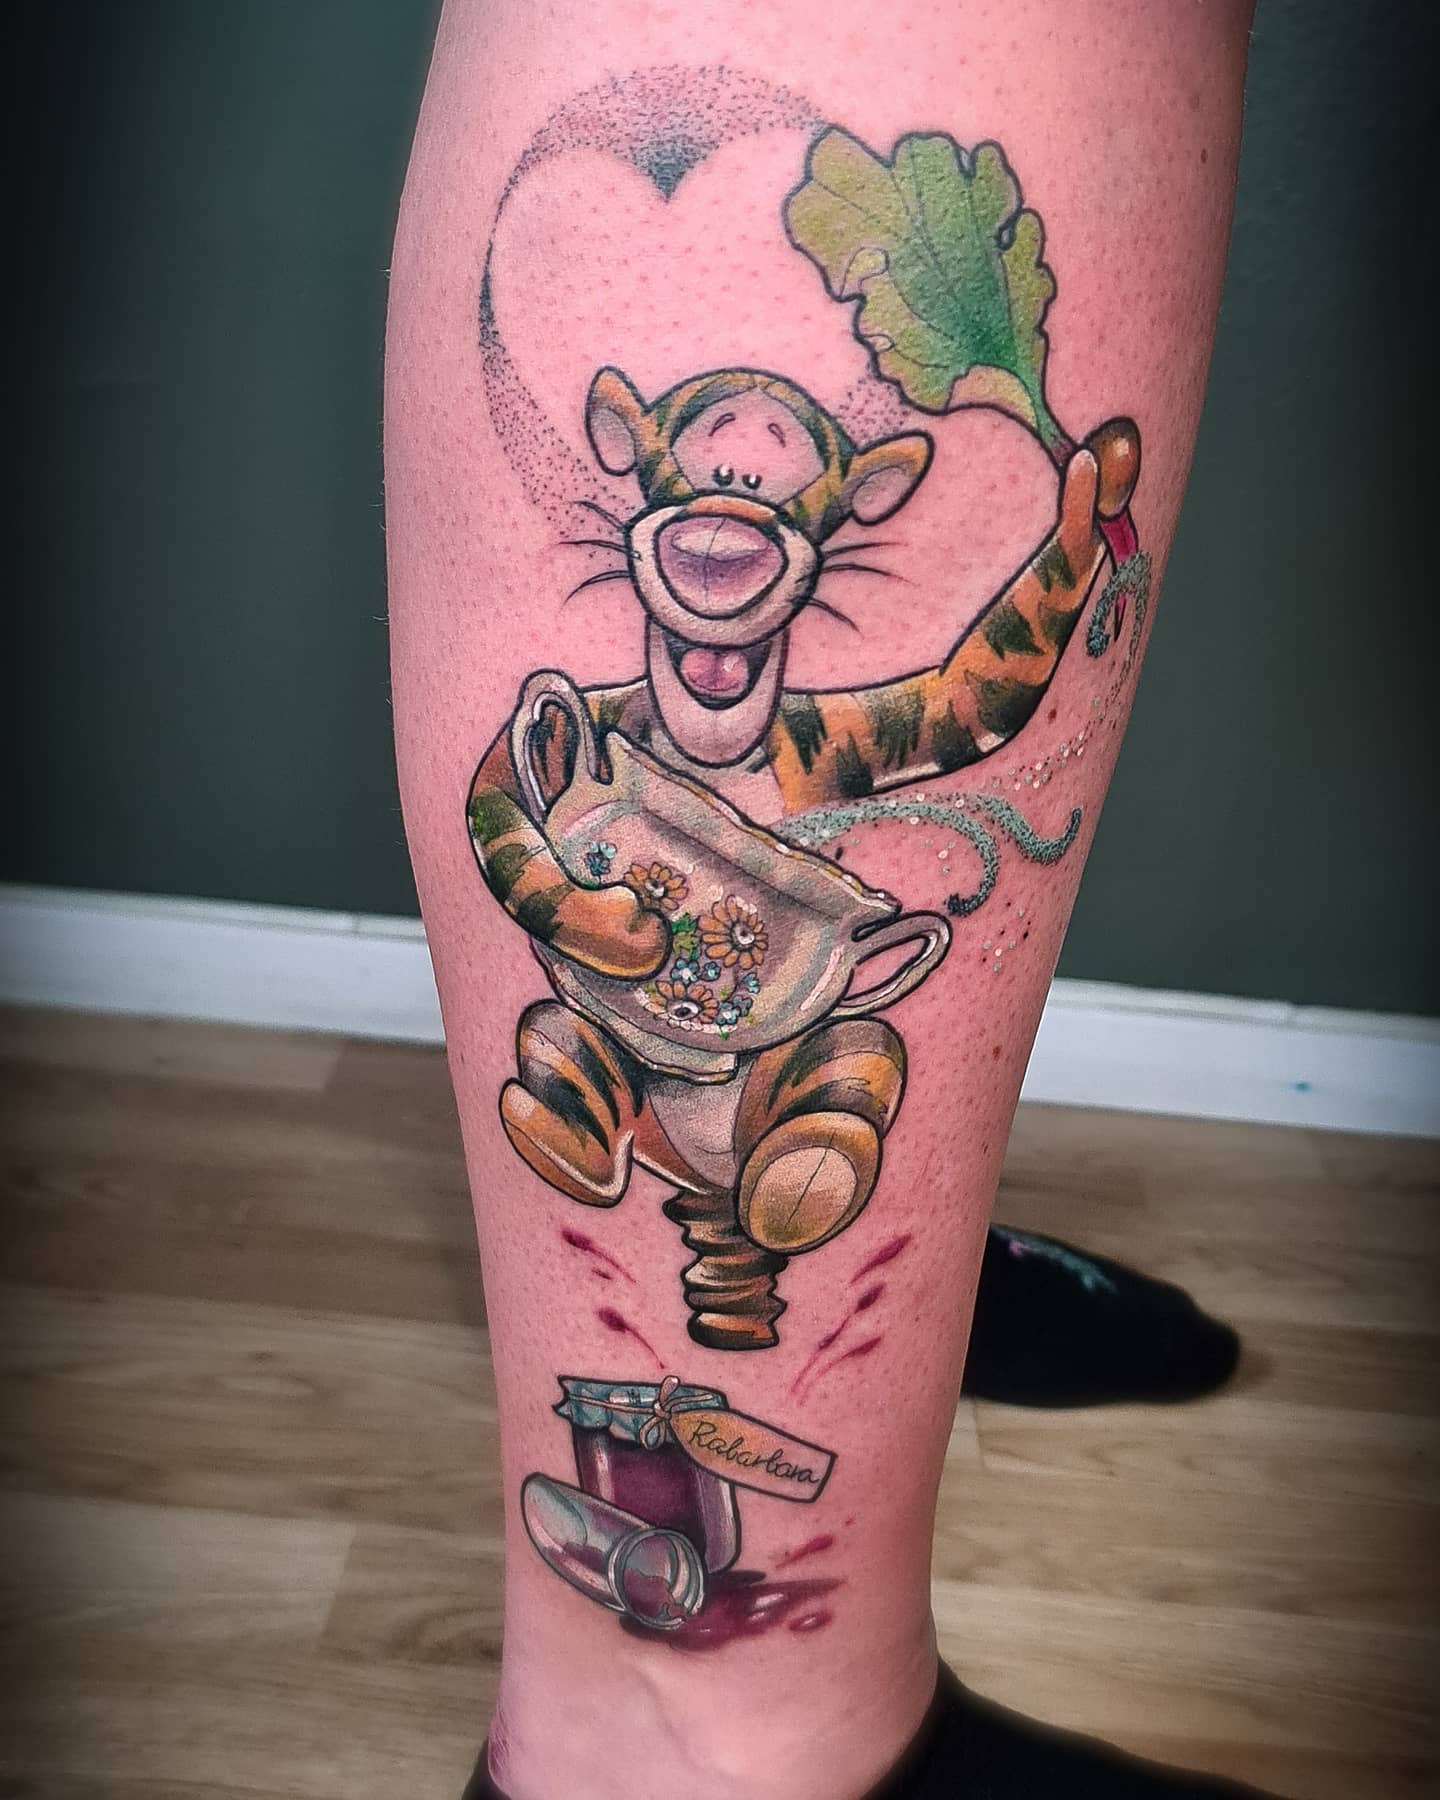 Tatuaje Tigger Winnie the Pooh -kindy_tattoodoodle